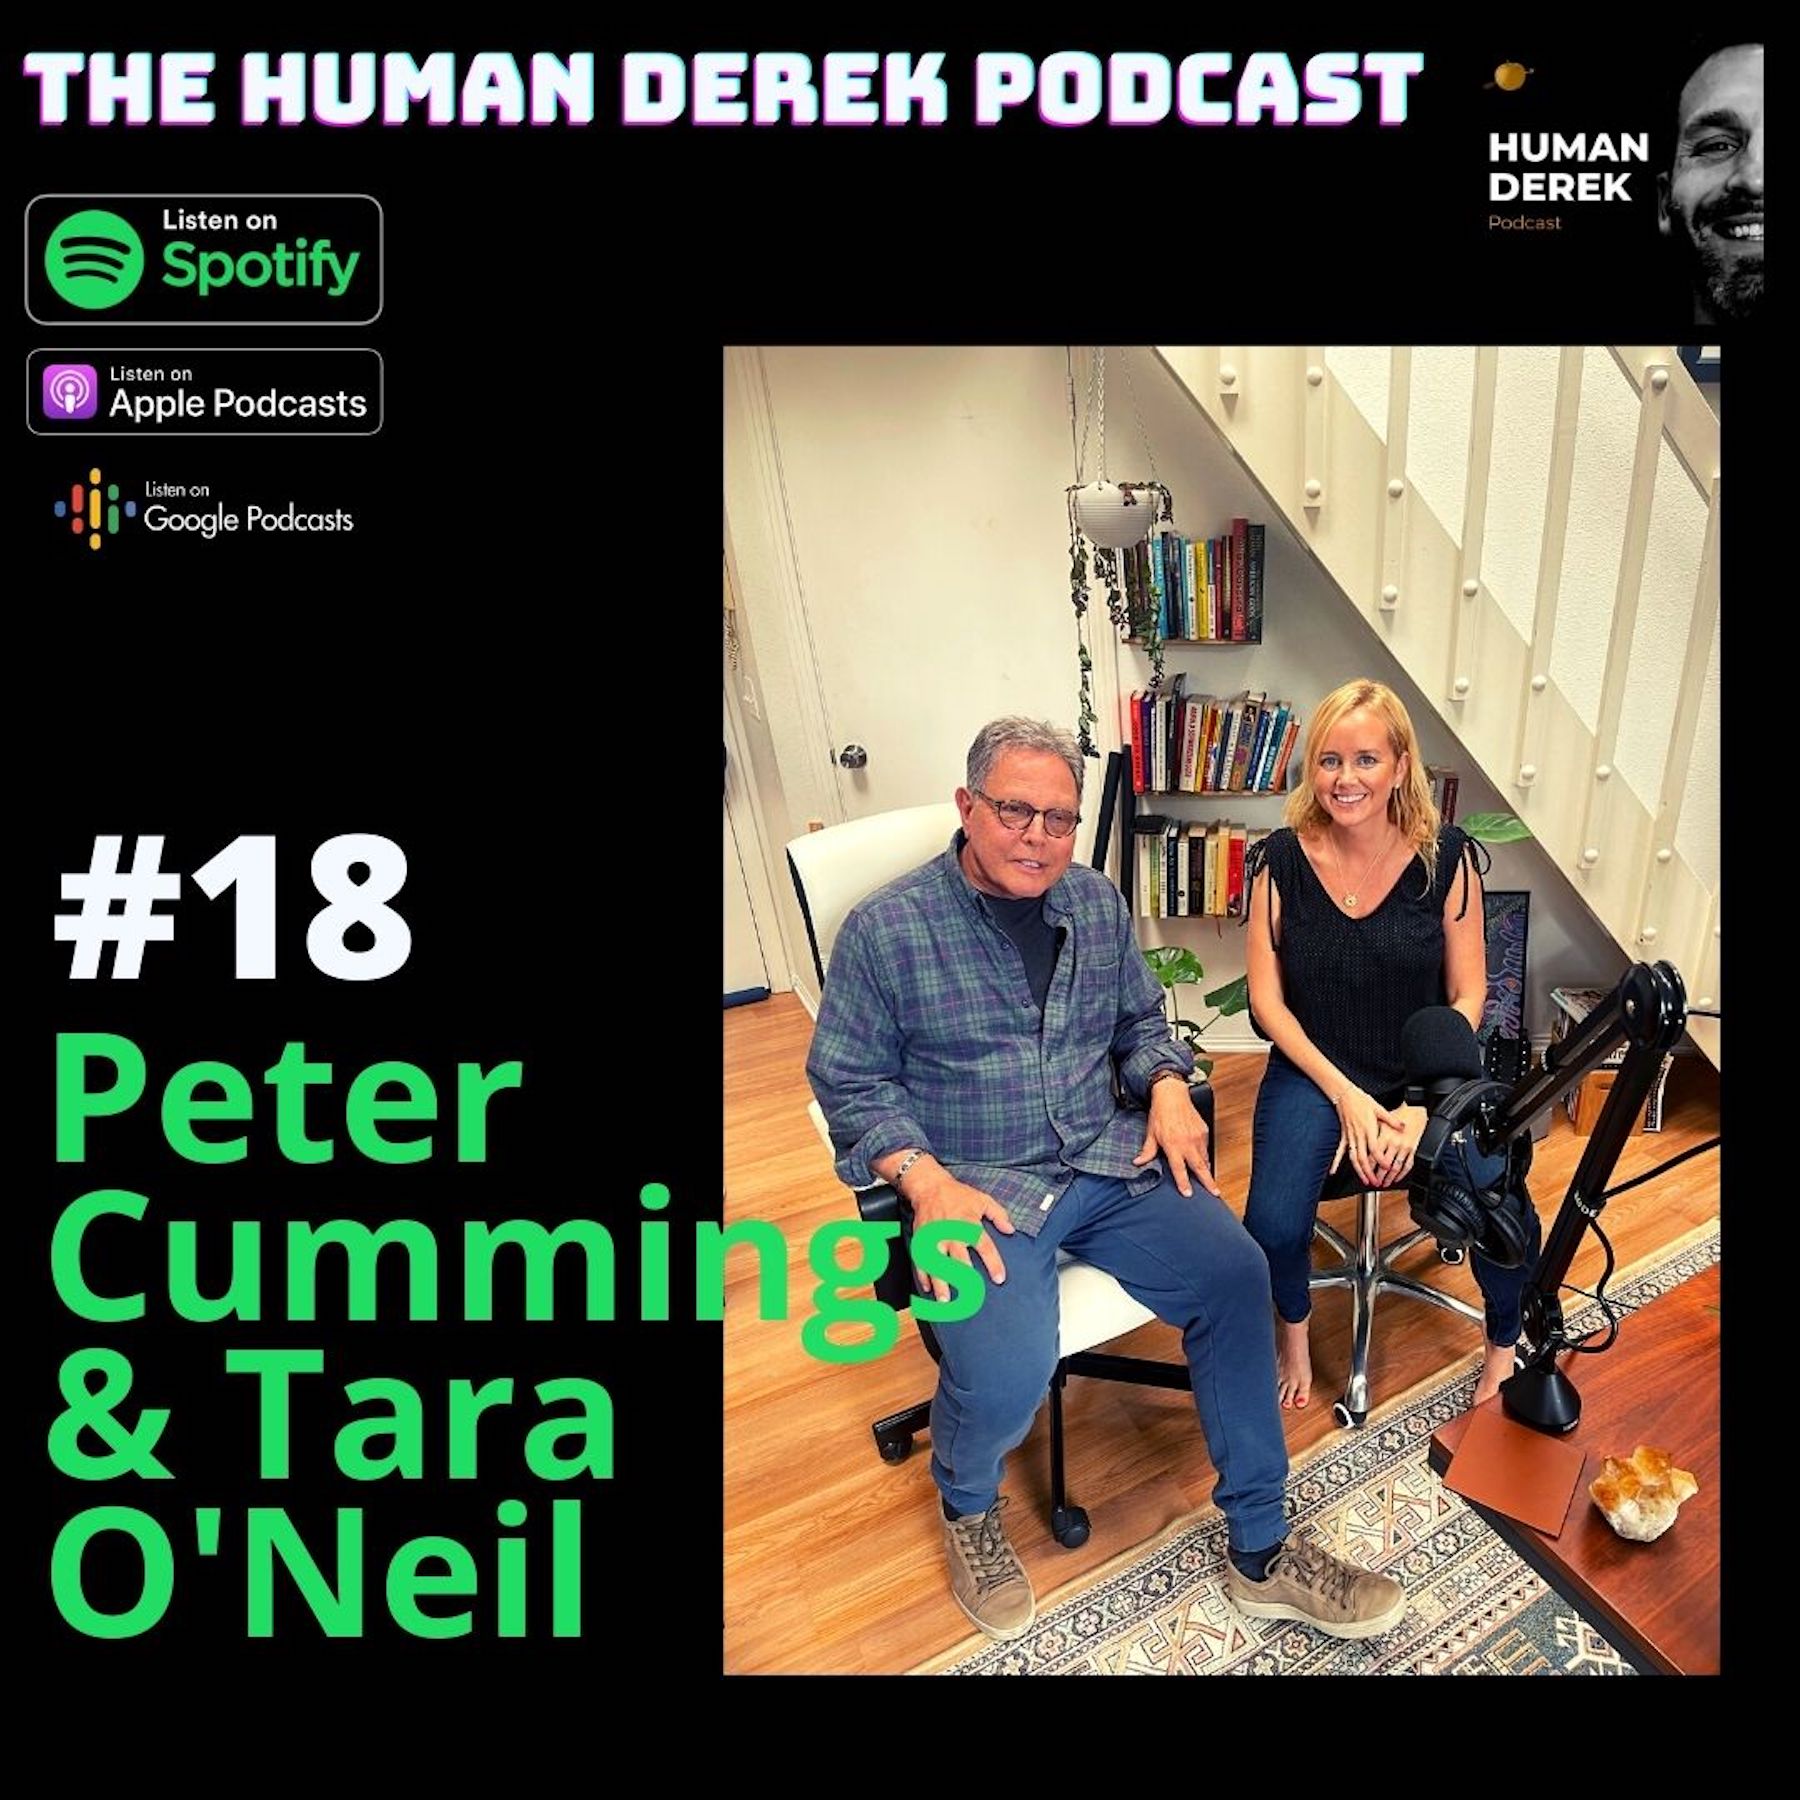 Artwork for podcast The Human Derek Podcast